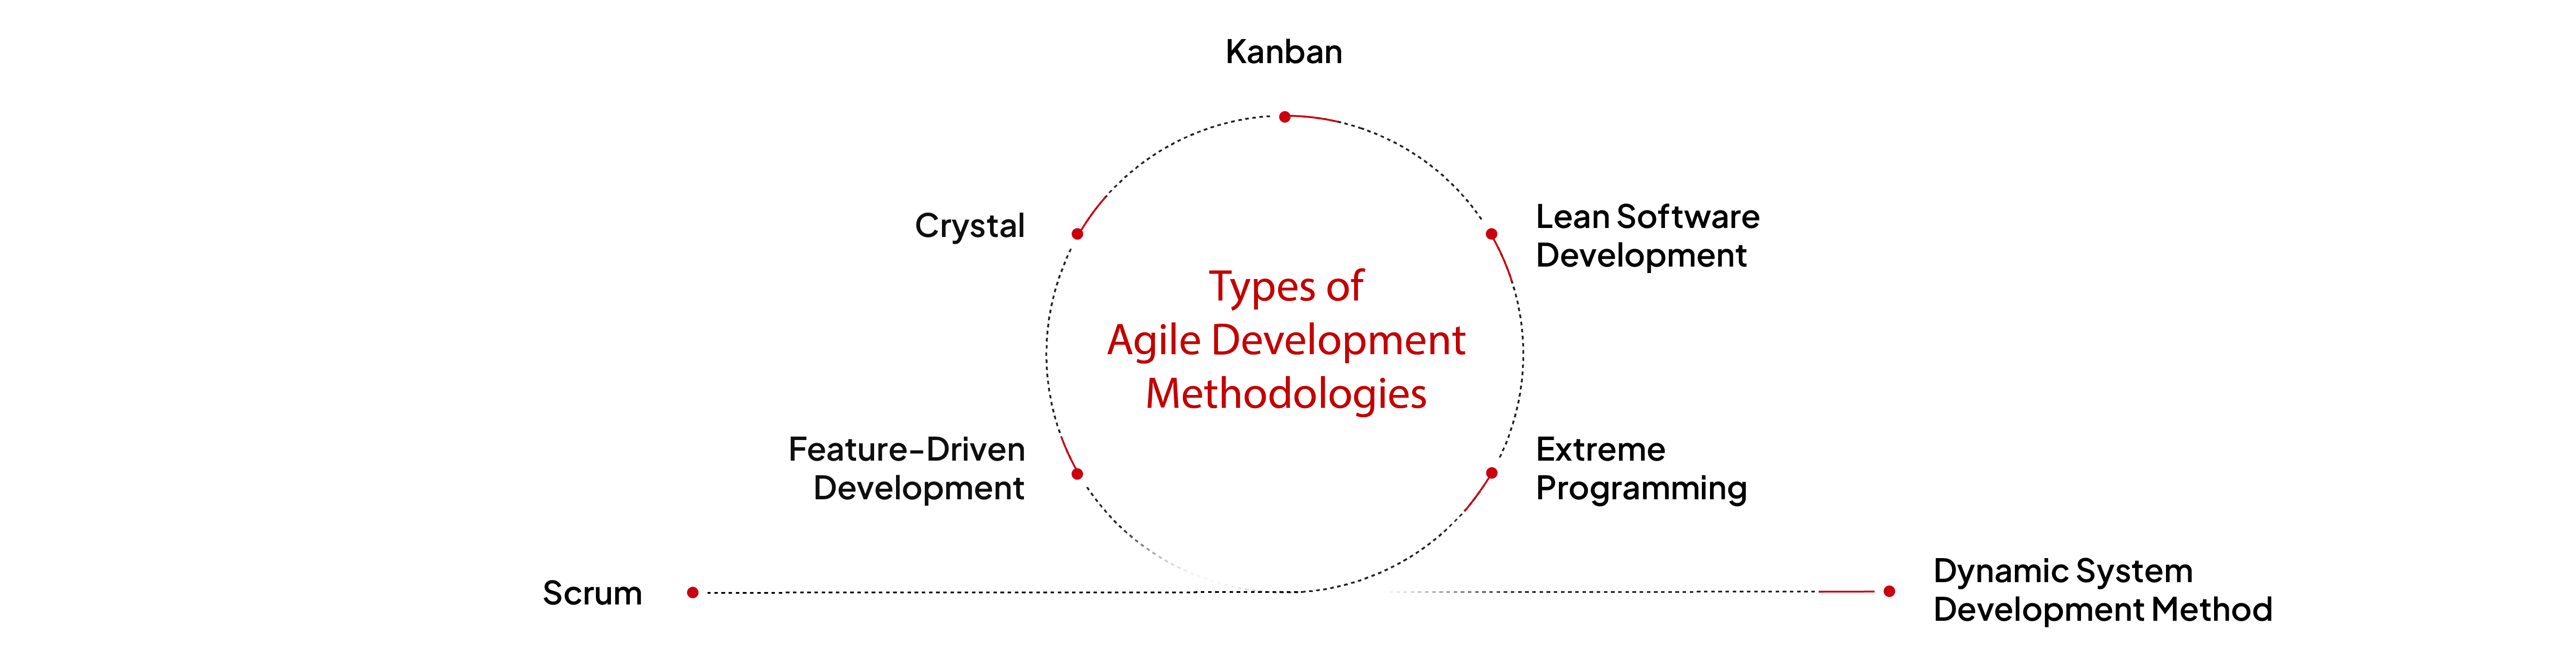 Types of Agile Development Methodologies